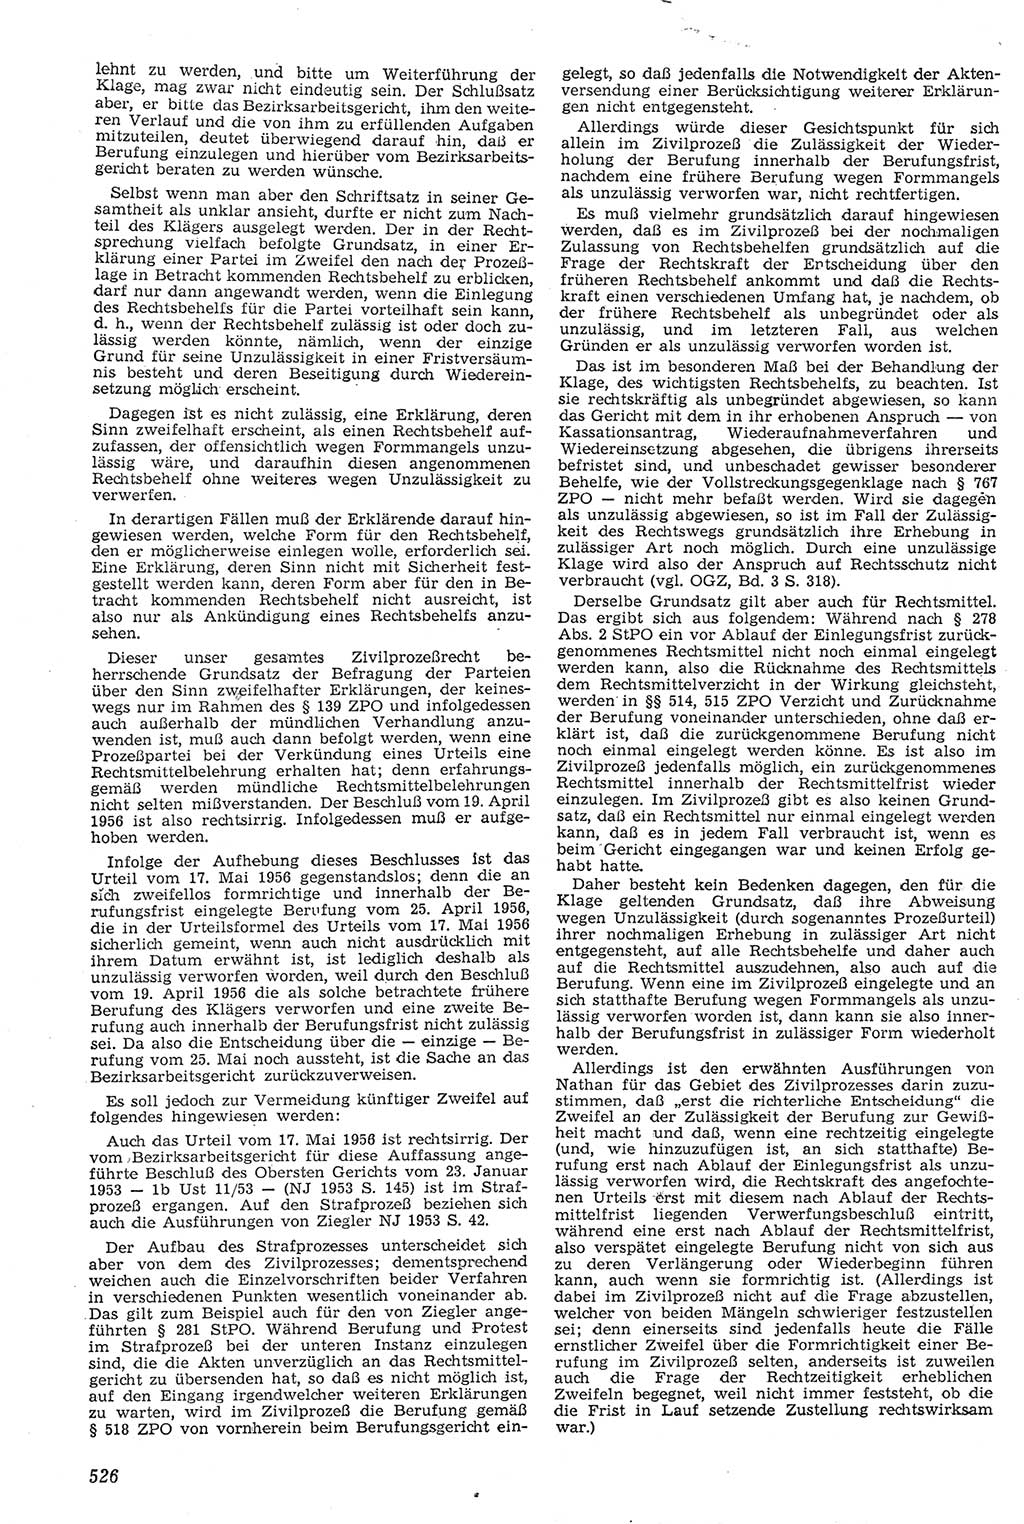 Neue Justiz (NJ), Zeitschrift für Recht und Rechtswissenschaft [Deutsche Demokratische Republik (DDR)], 11. Jahrgang 1957, Seite 526 (NJ DDR 1957, S. 526)